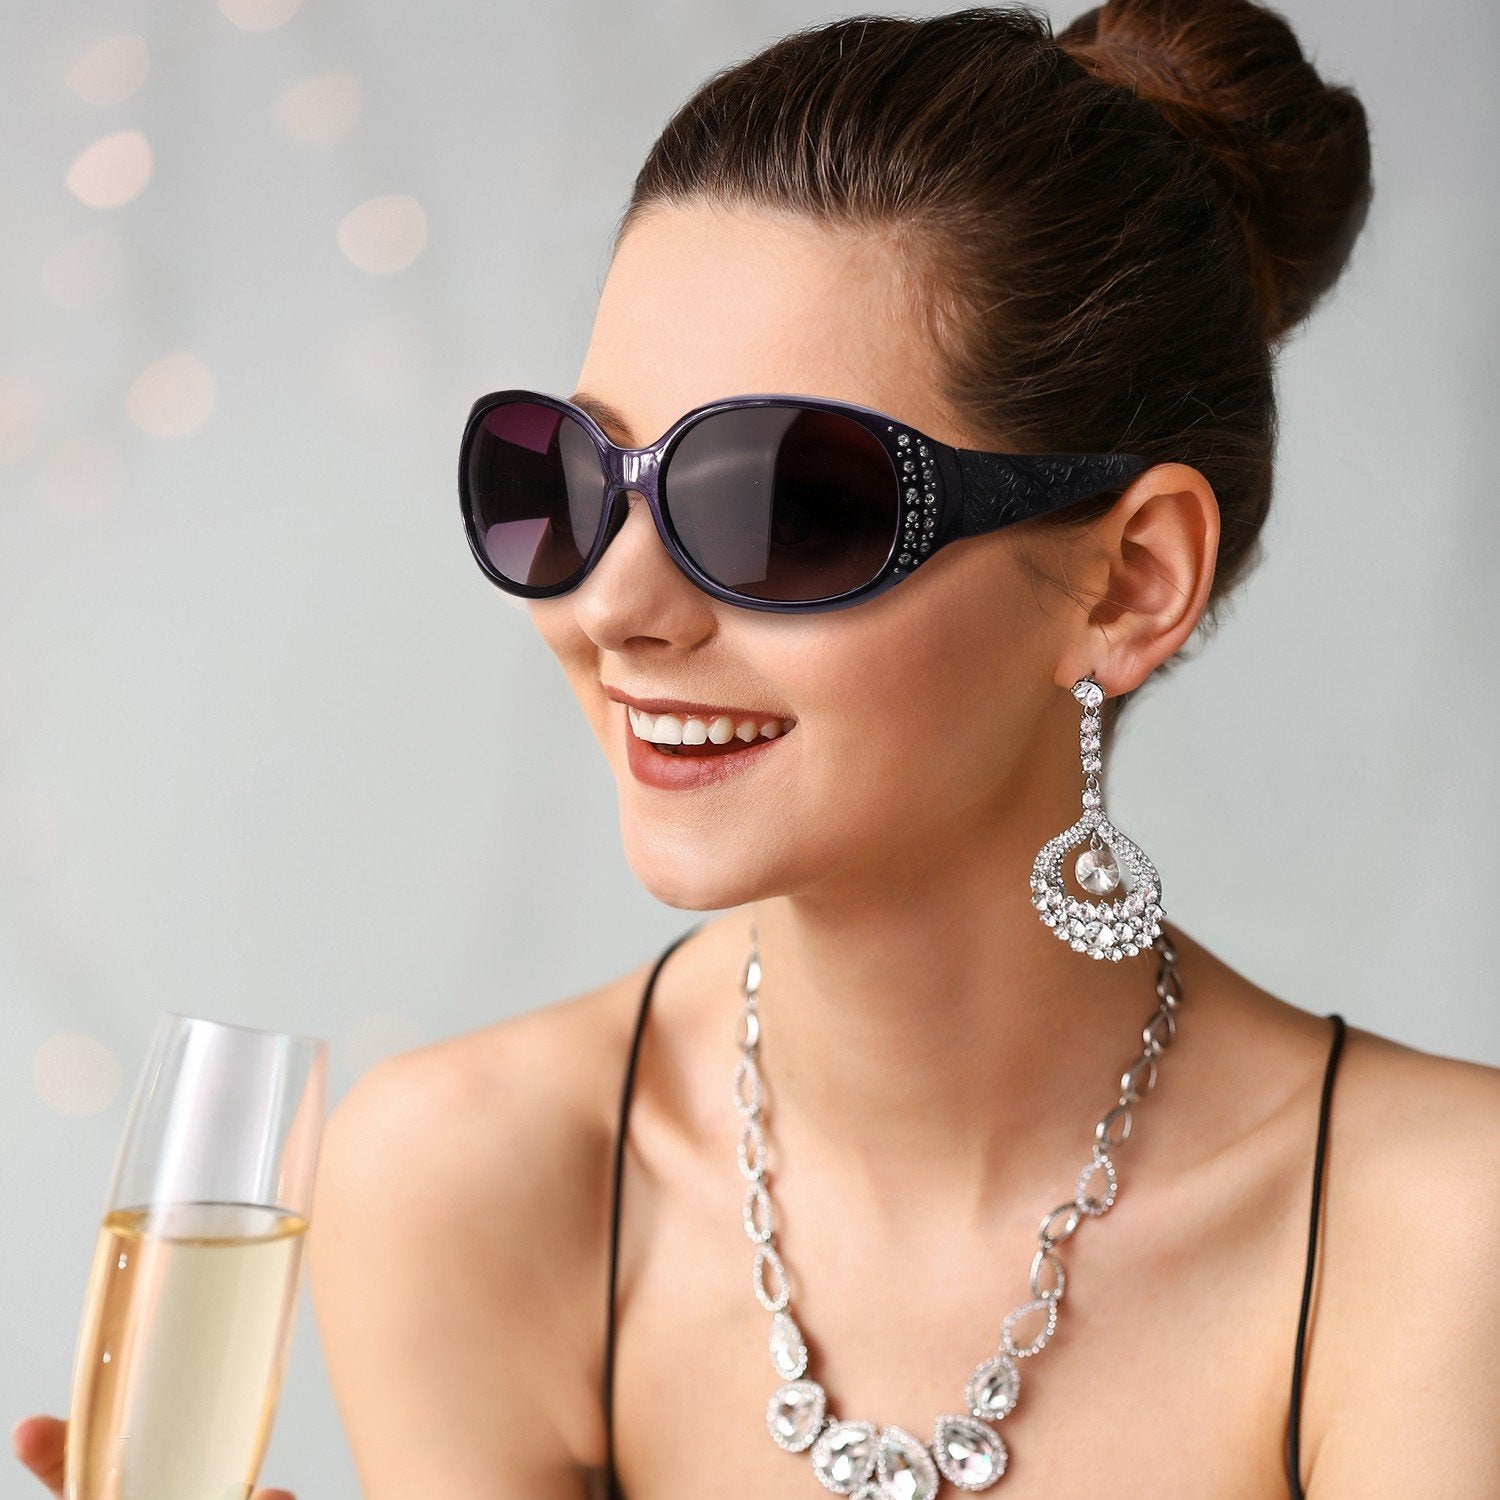 LVIOE Prescription Sunglasses Rx Sun Glasses for Women-Rhinebeck